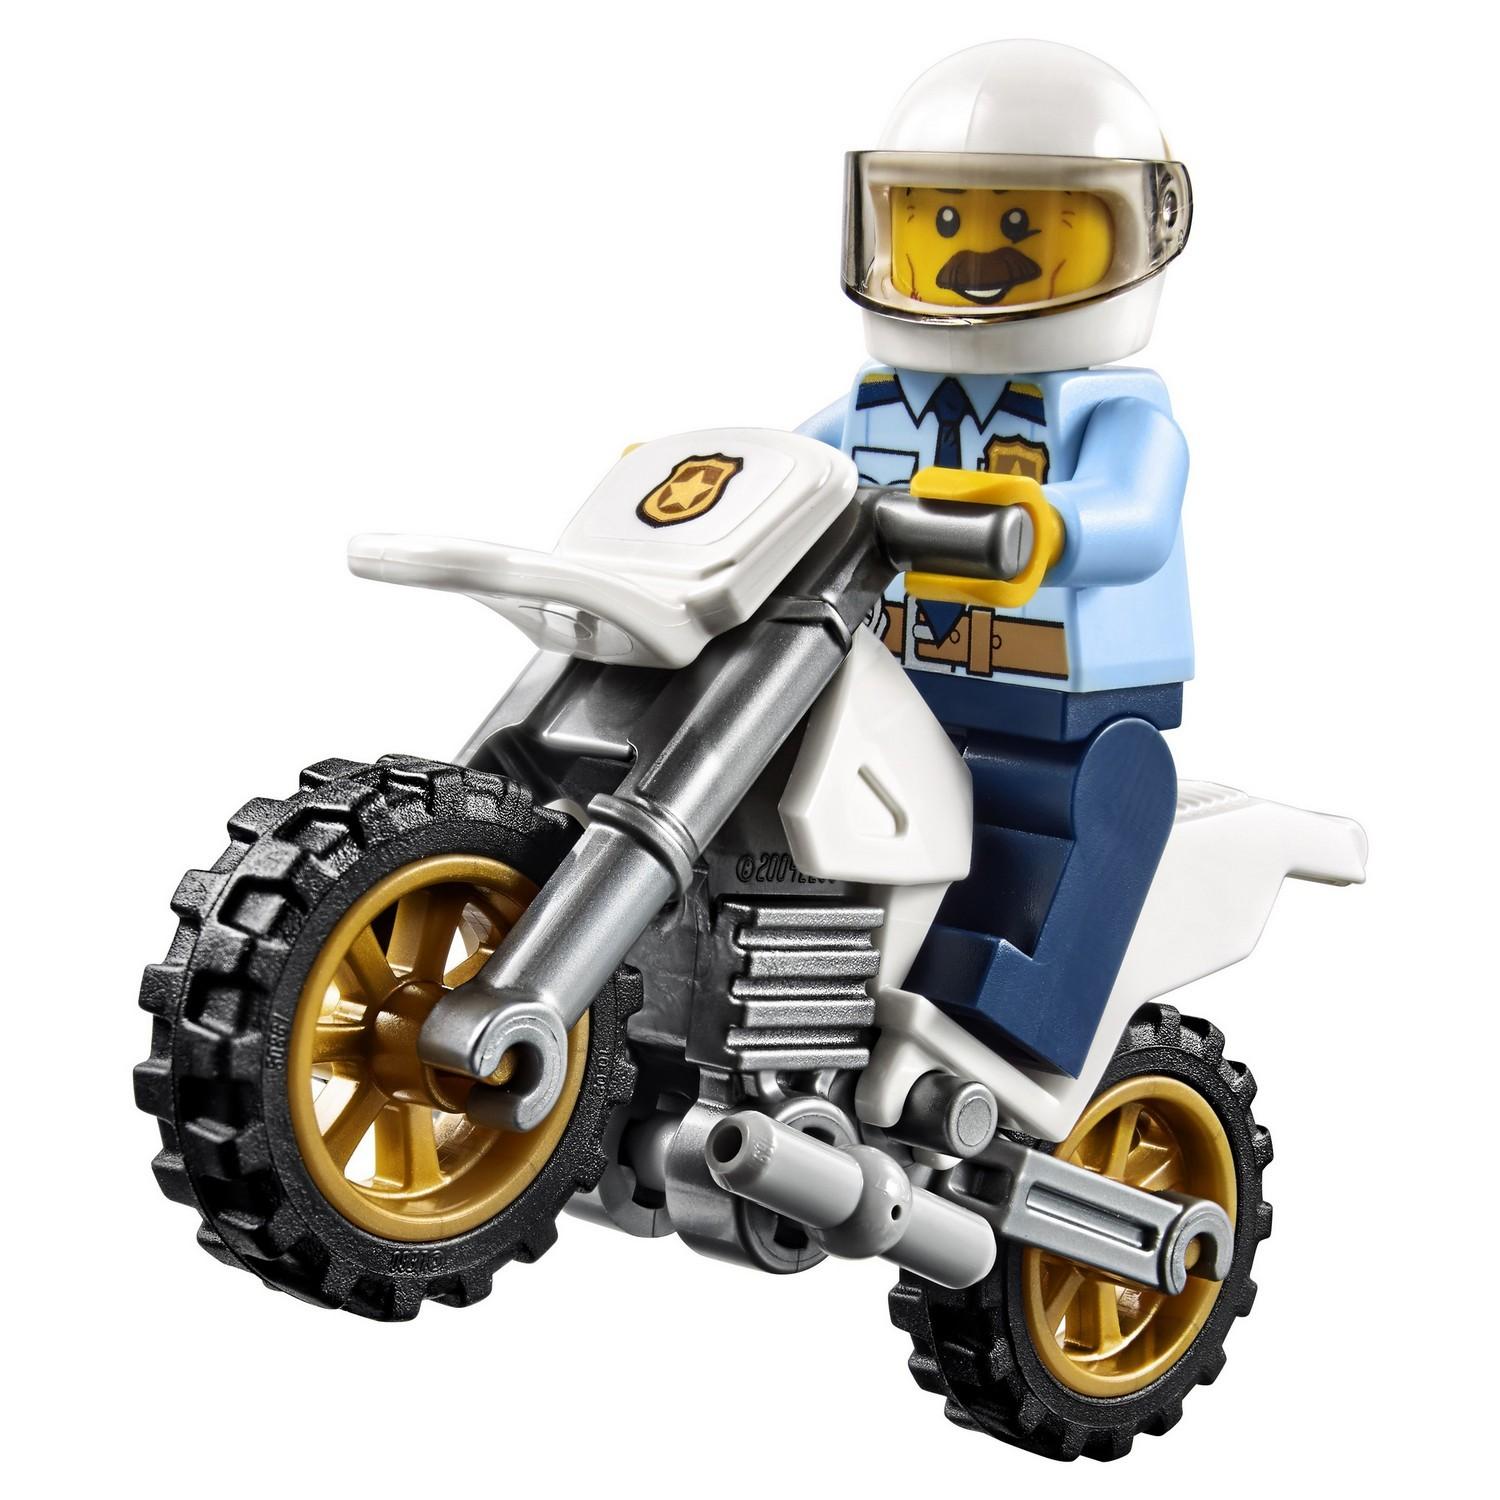 Lego City 60137 Побег на буксировщике